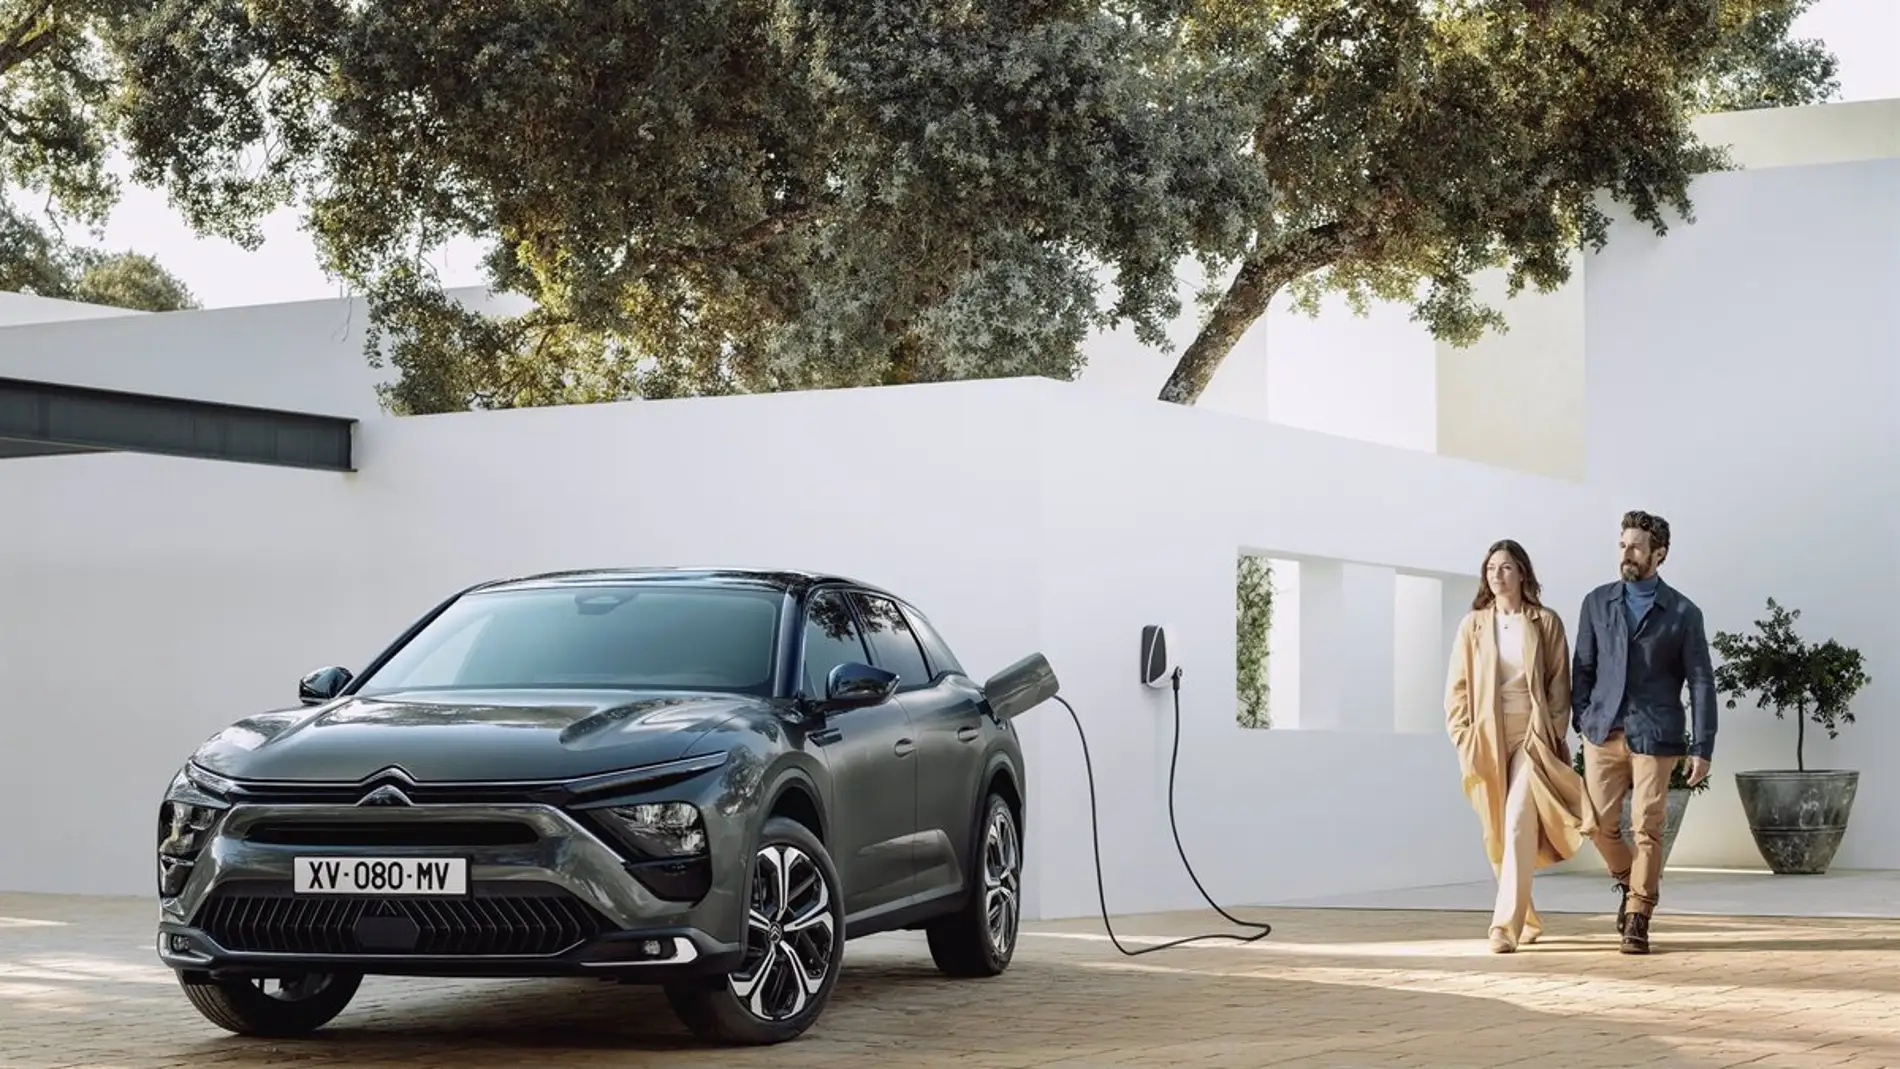 difícil Entender mal Sueño Citroën abrirá en octubre los pedidos del nuevo C5 X